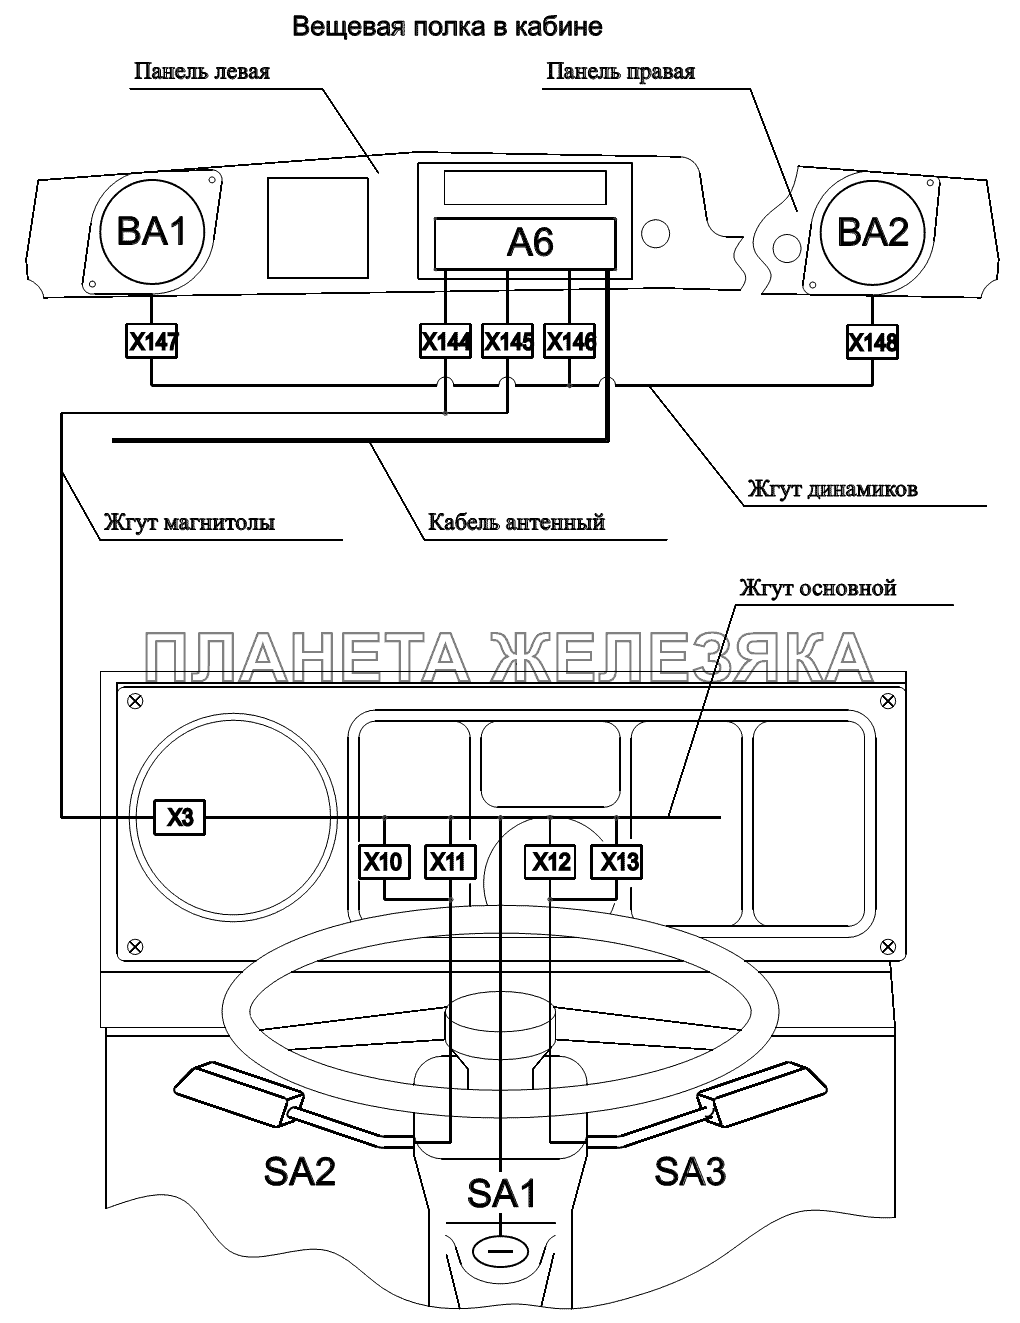 Расположение разъемов и элементов электрооборудования на рулевой колонке и вещевой полке МАЗ-6422, 5432